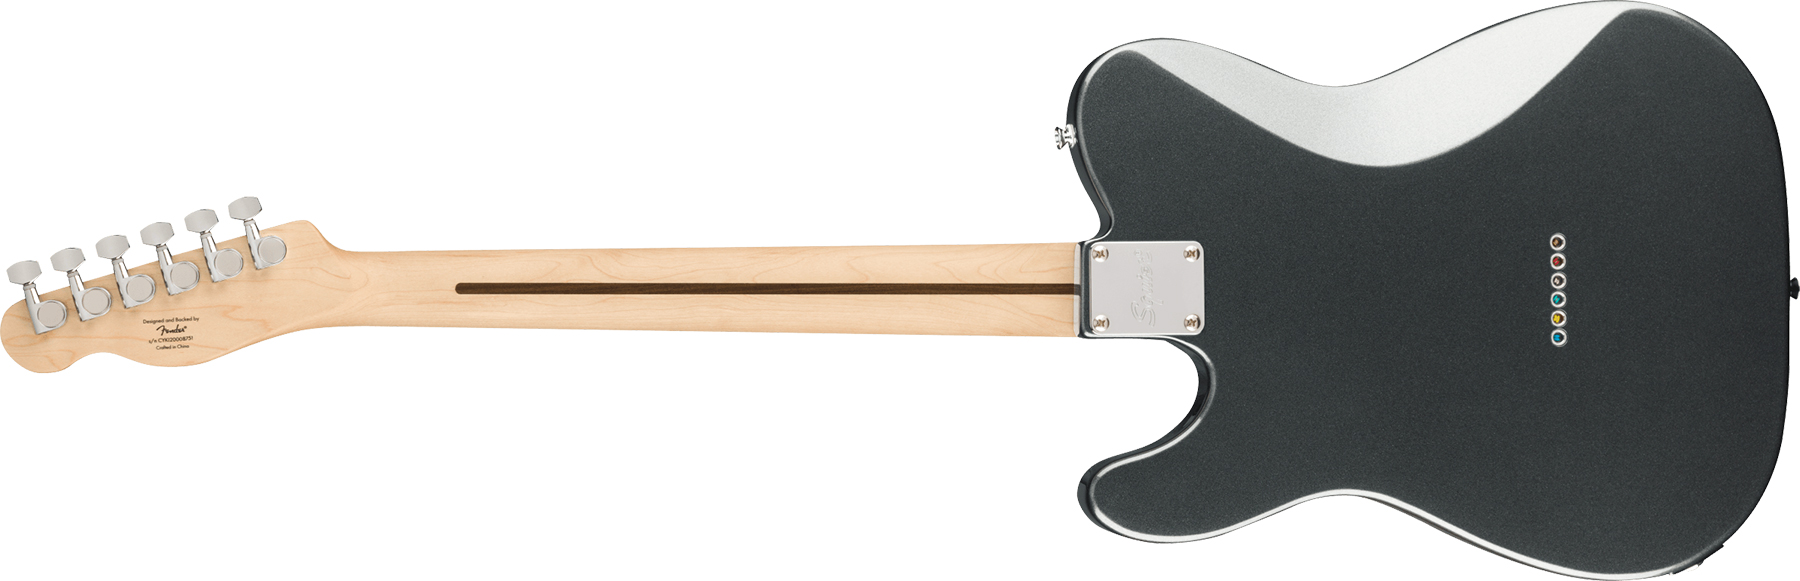 Squier Tele Affinity Deluxe 2021 Hh Ht Lau - Charcoal Frost Metallic - Guitare Électrique Forme Tel - Variation 1